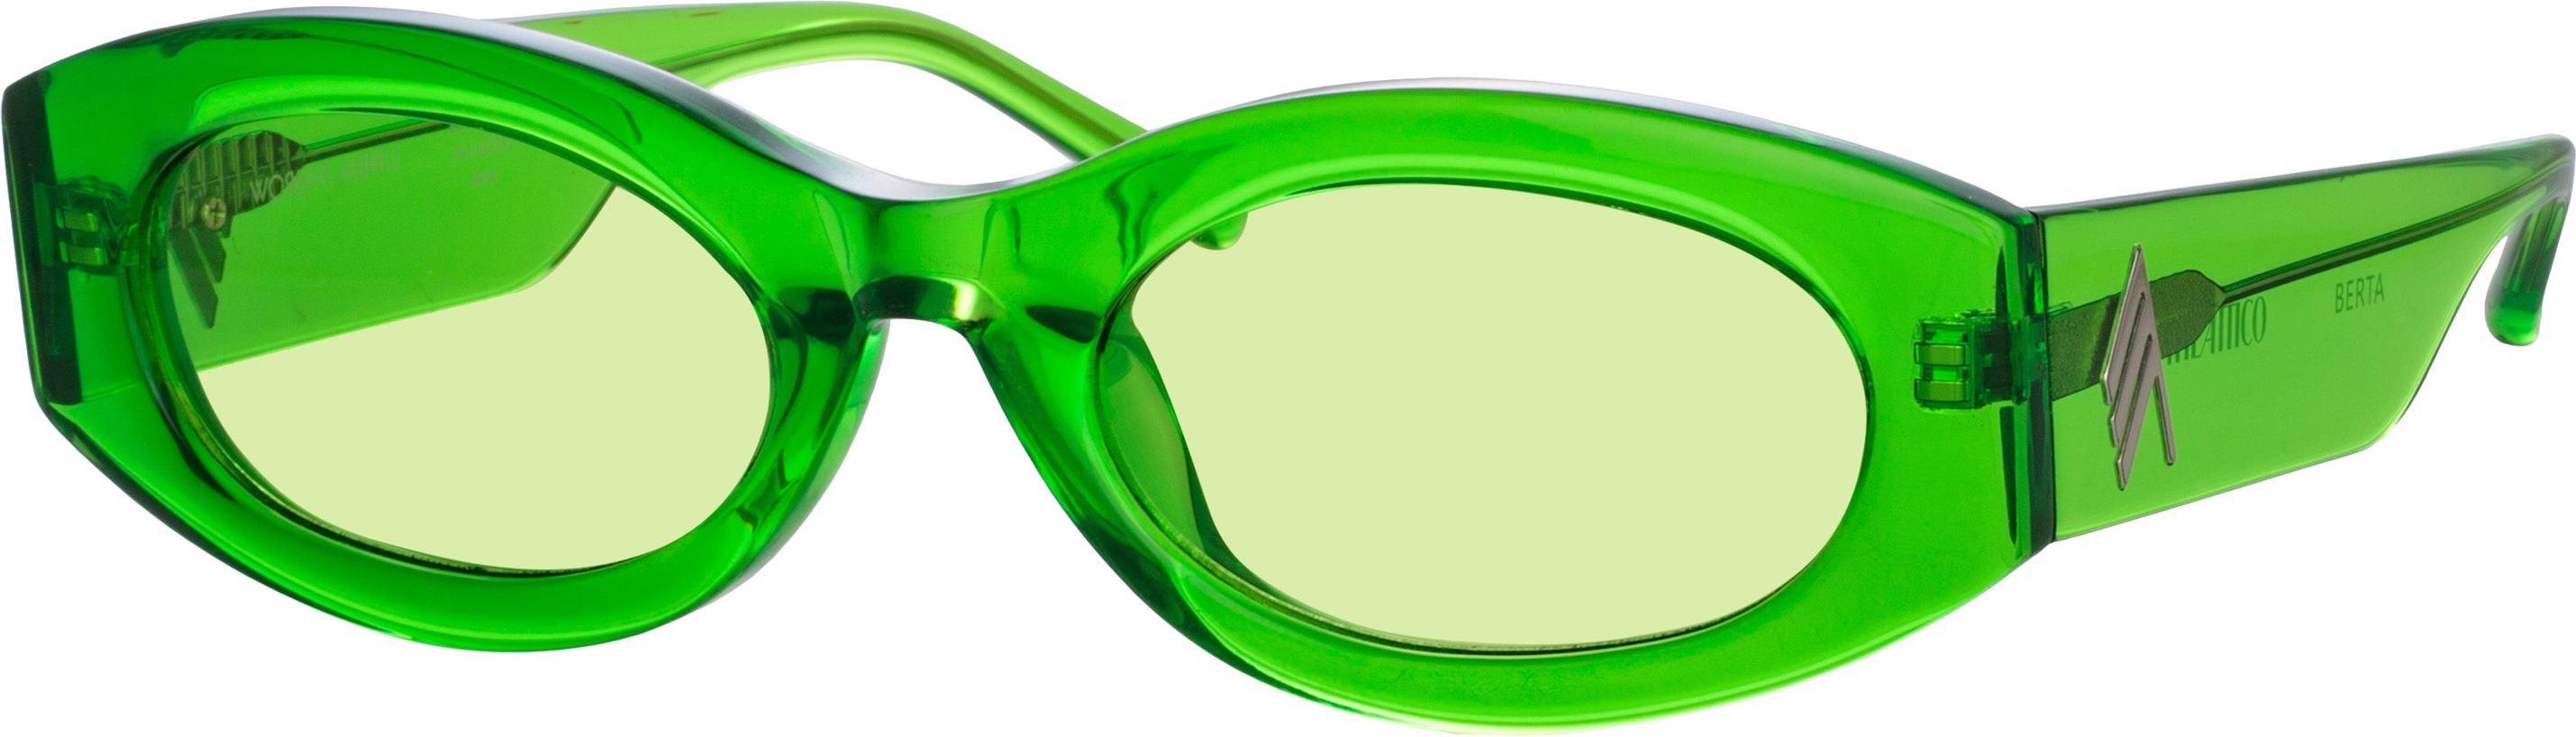 Color_ATTICO38C6SUN - The Attico Berta Oval Sunglasses in Green